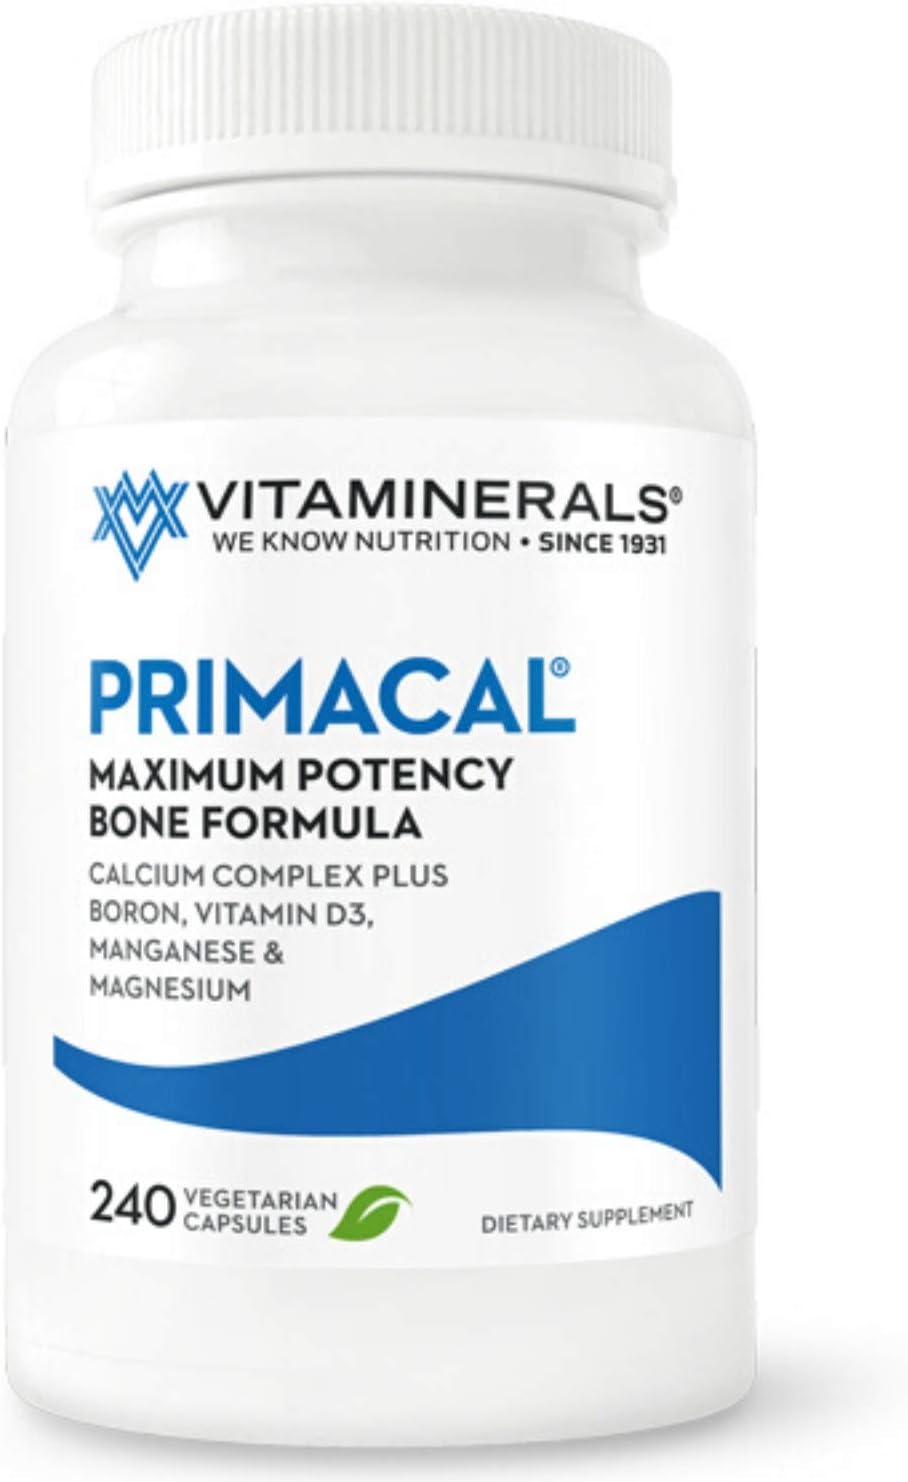 Vitaminerals 95 Primacal? Bone Support Maximum Potency Calcium, Magnesium for Bone Loss (240)